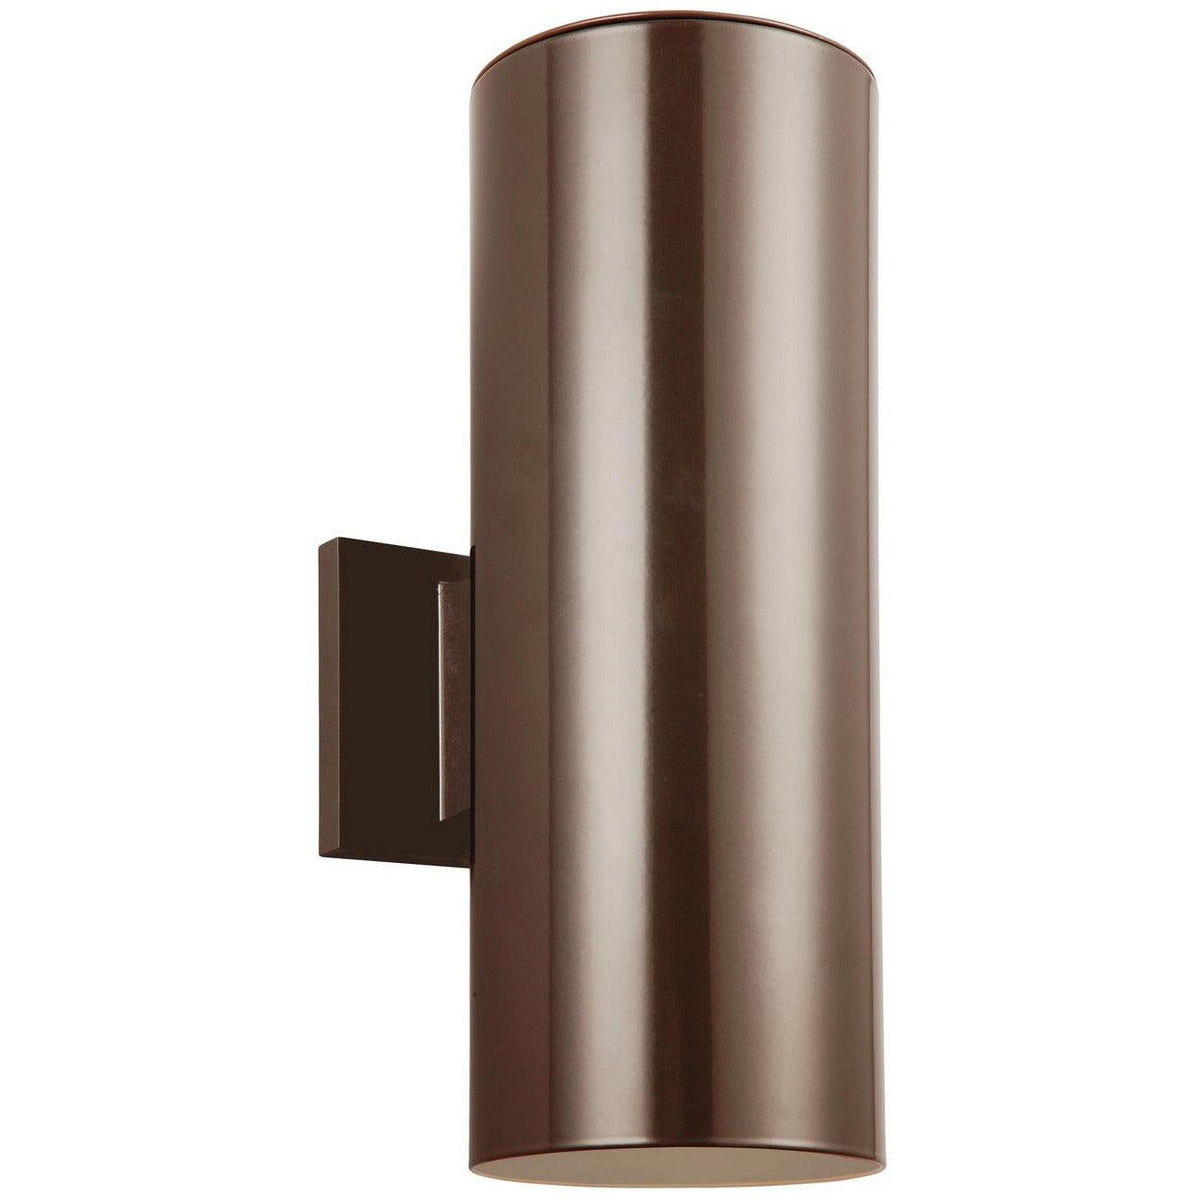 Generation Lighting - Outdoor Cylinders Outdoor Wall Lantern - 8313801EN3-15 | Montreal Lighting & Hardware